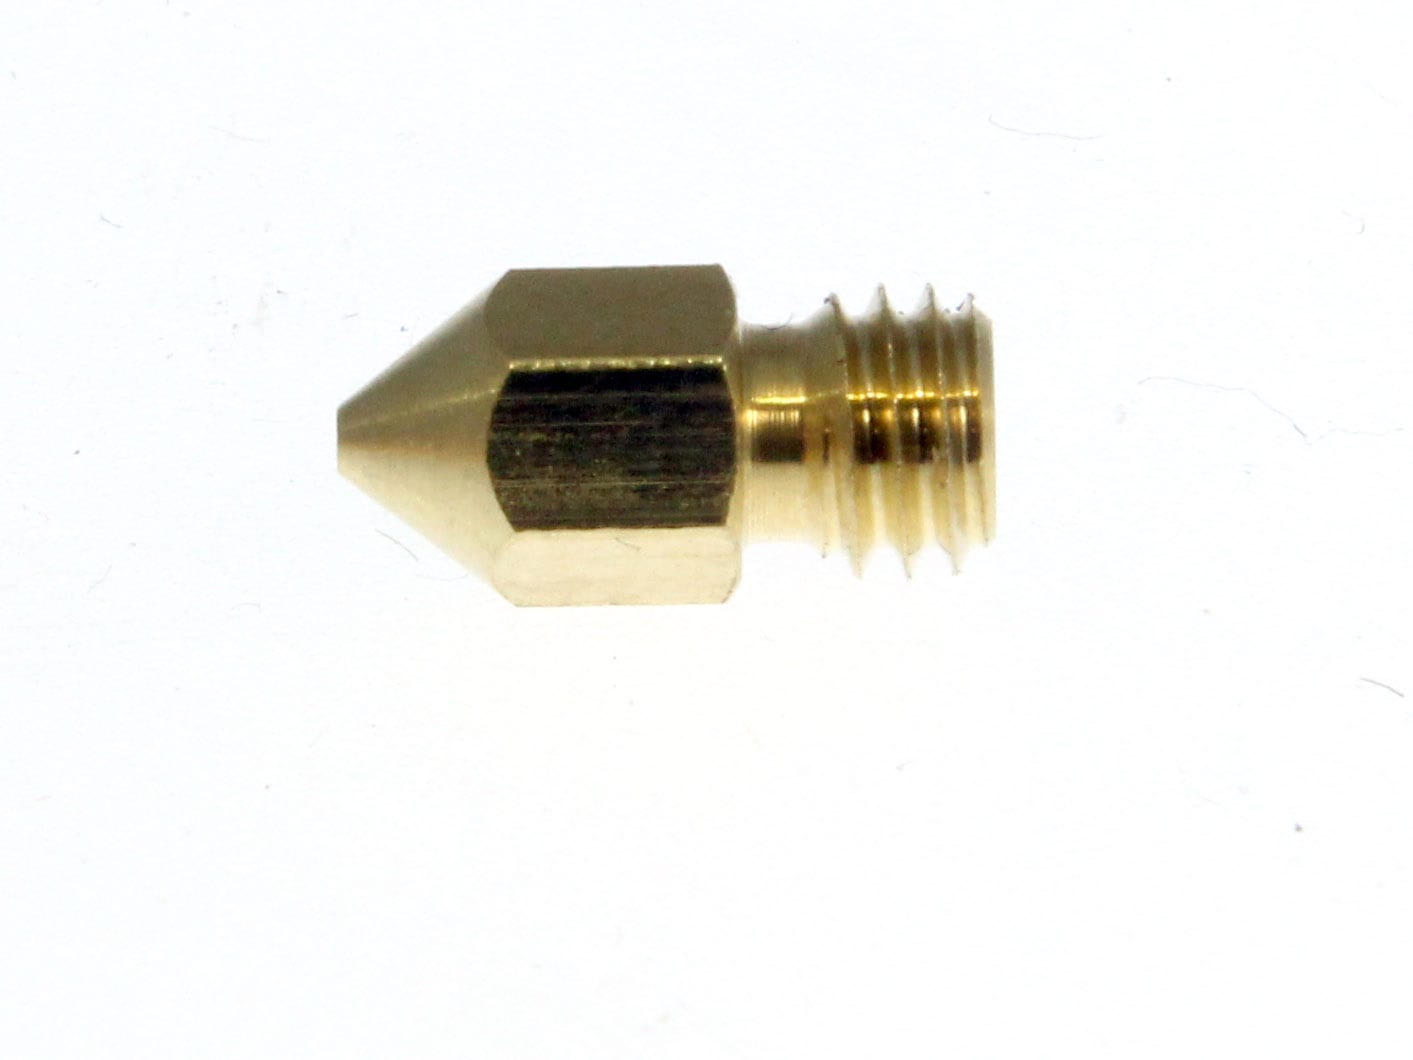 eSun 1.75mm Gold ABS Filament - 1kg Spool - Solarbotics Ltd.